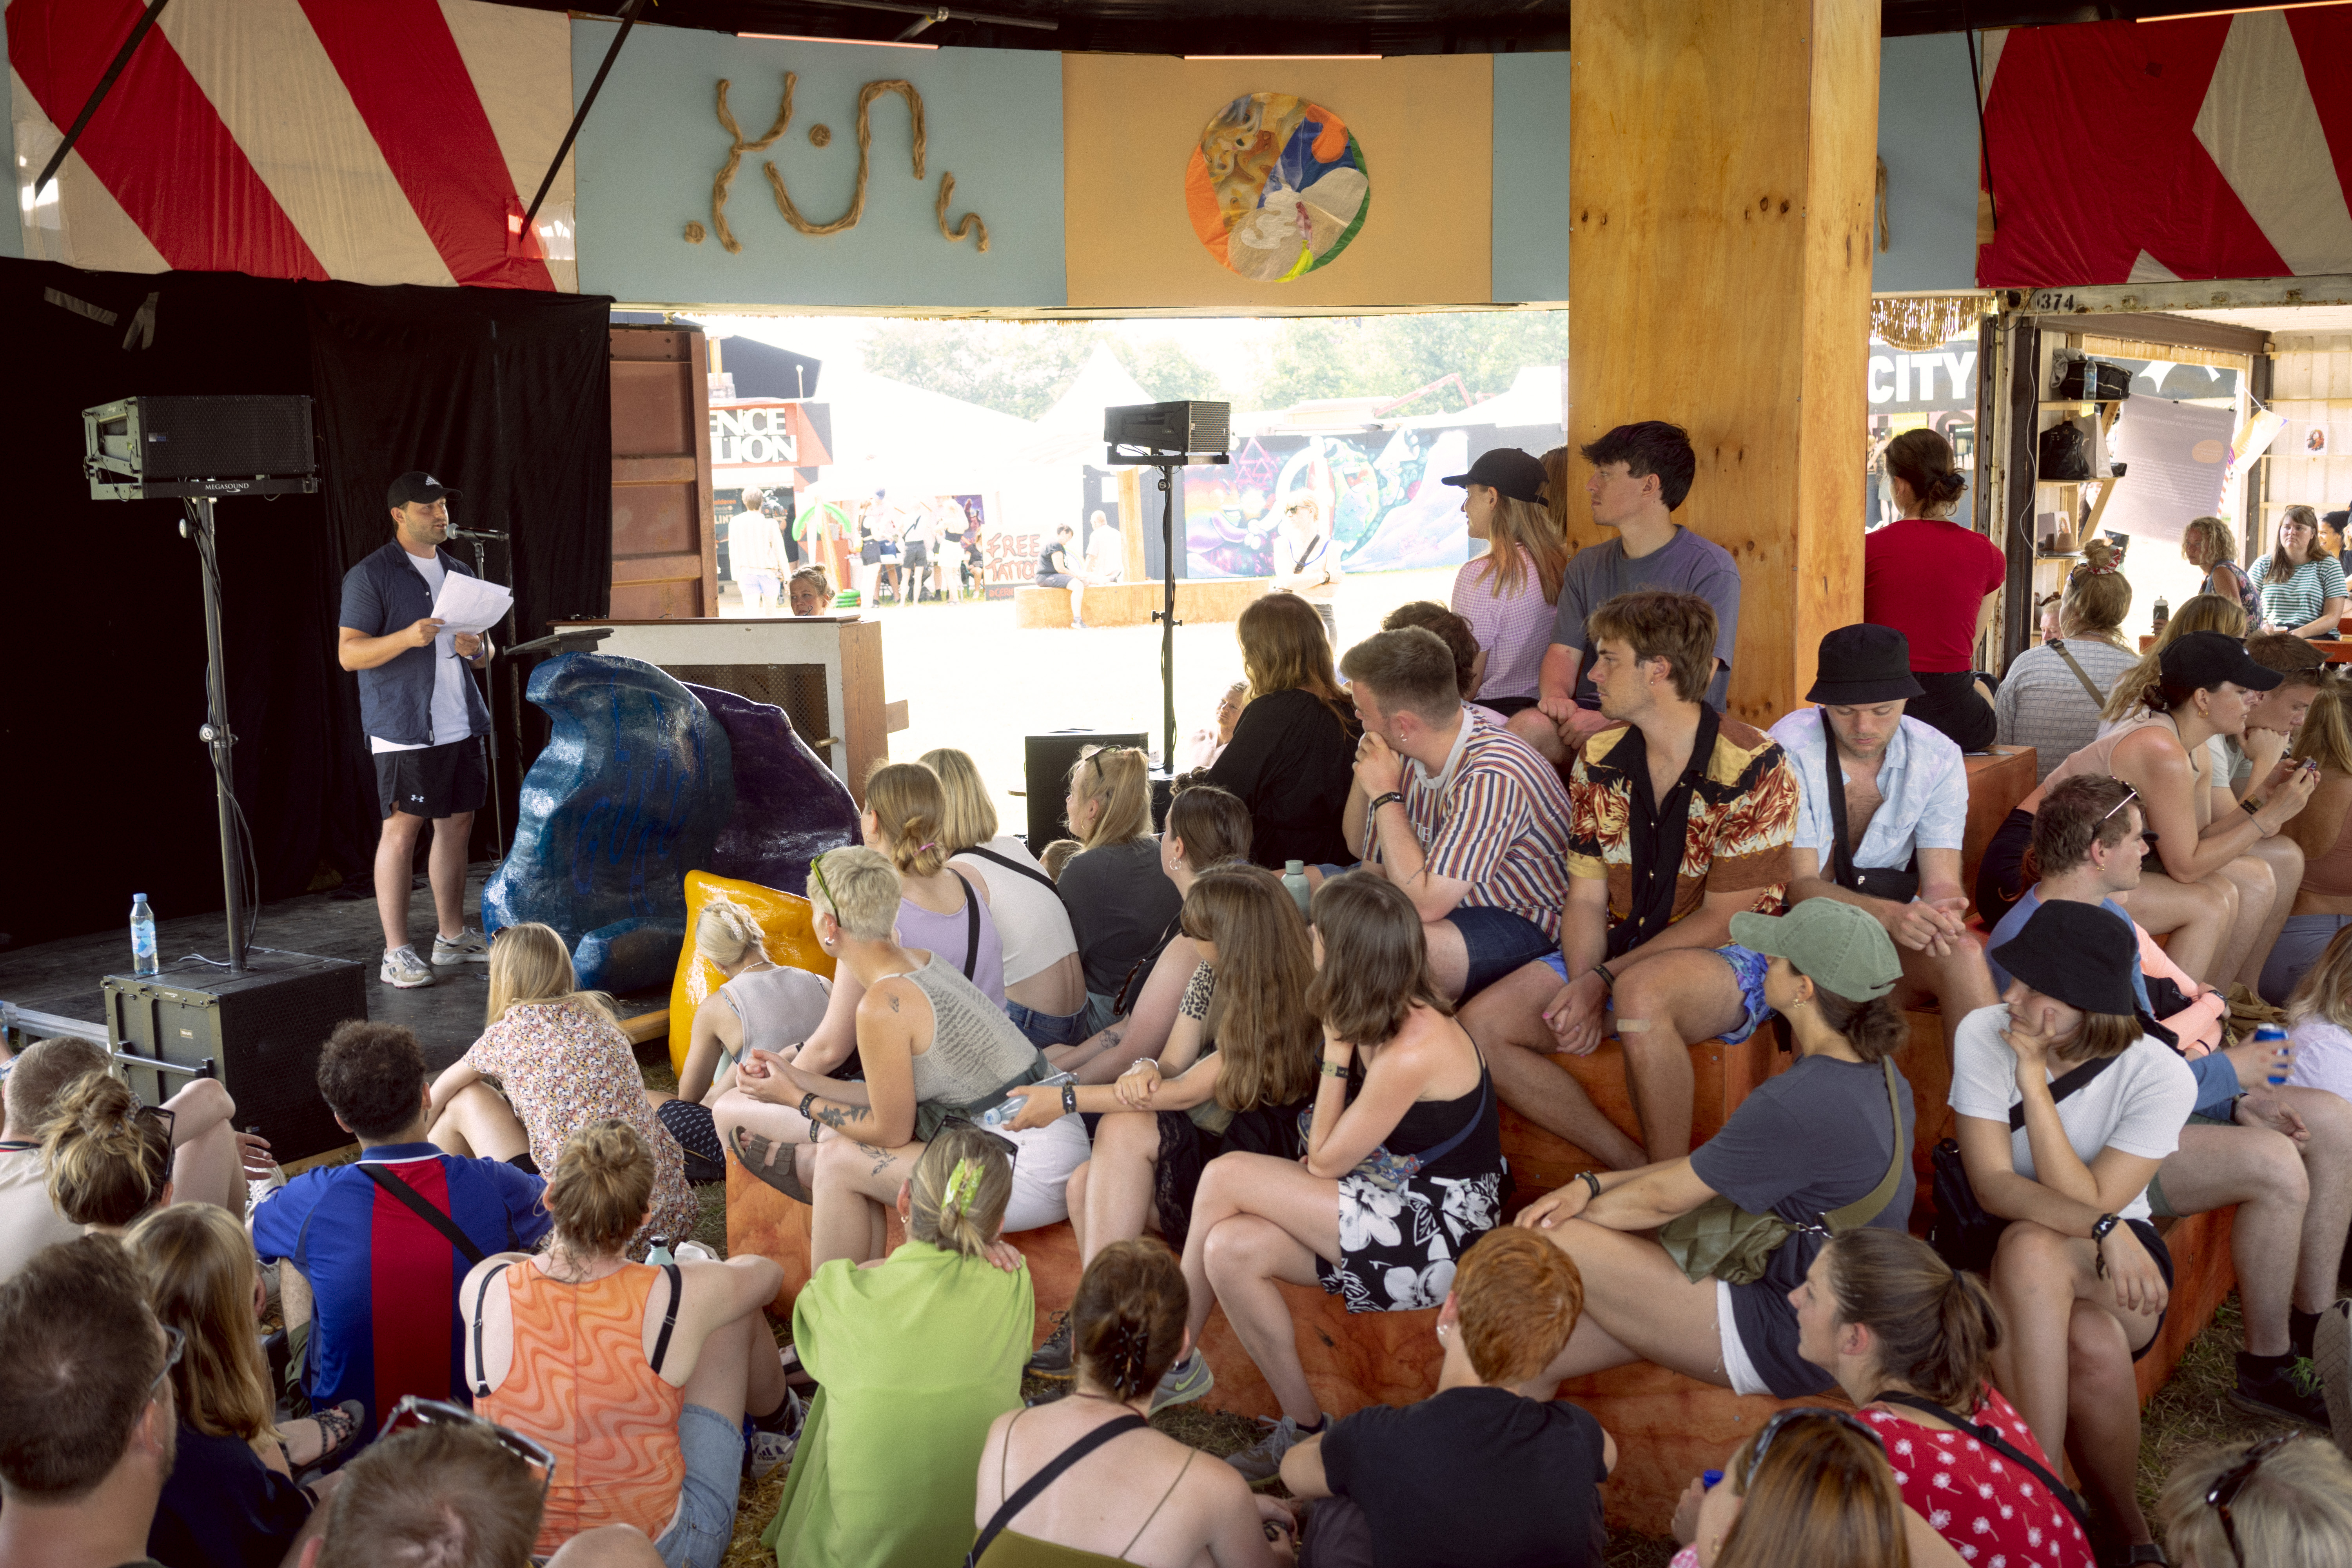 Røst er en talerskole for unge. Her taler en af deltagerne på Roskilde Festival. (Foto: Benjamin Nørskov)